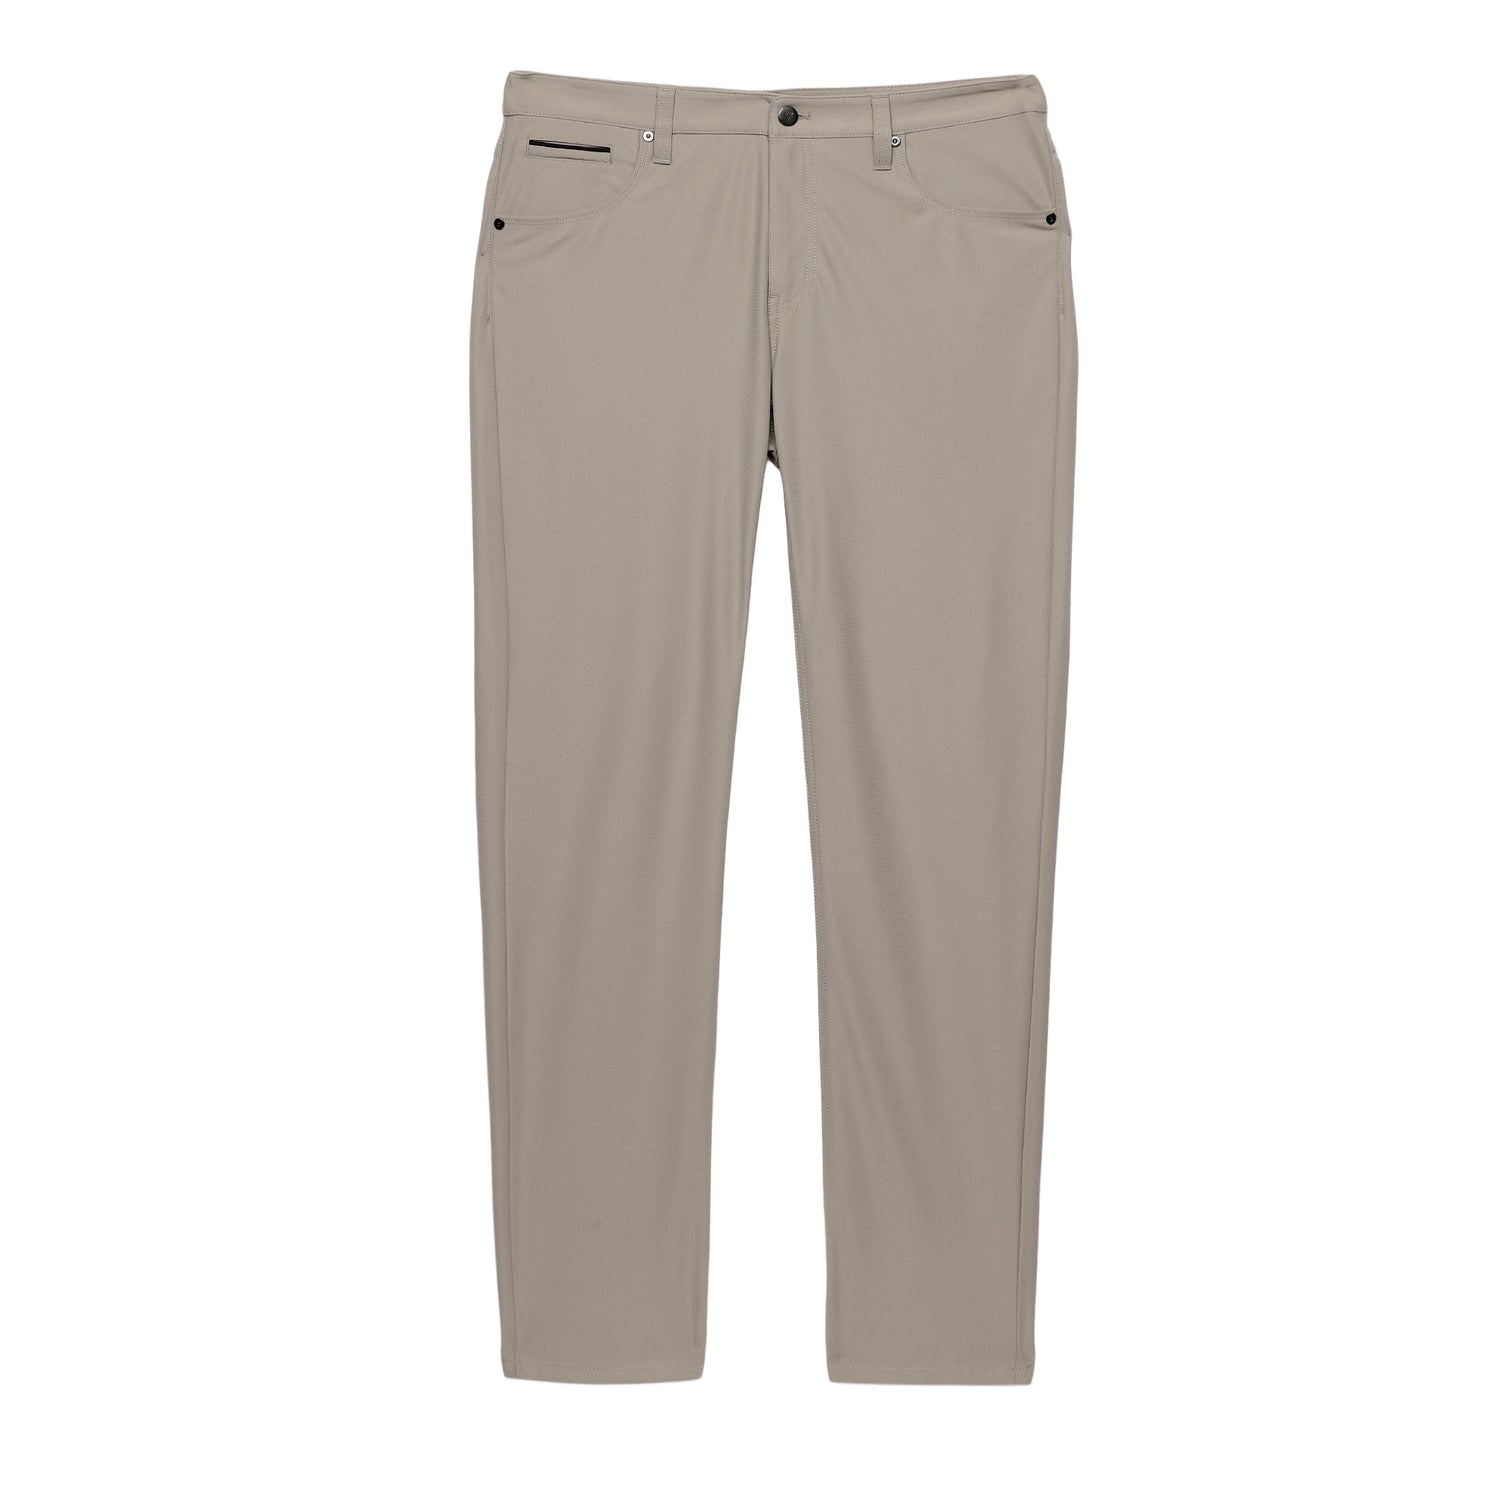 Slim Fit Golf Pant - Light Khaki